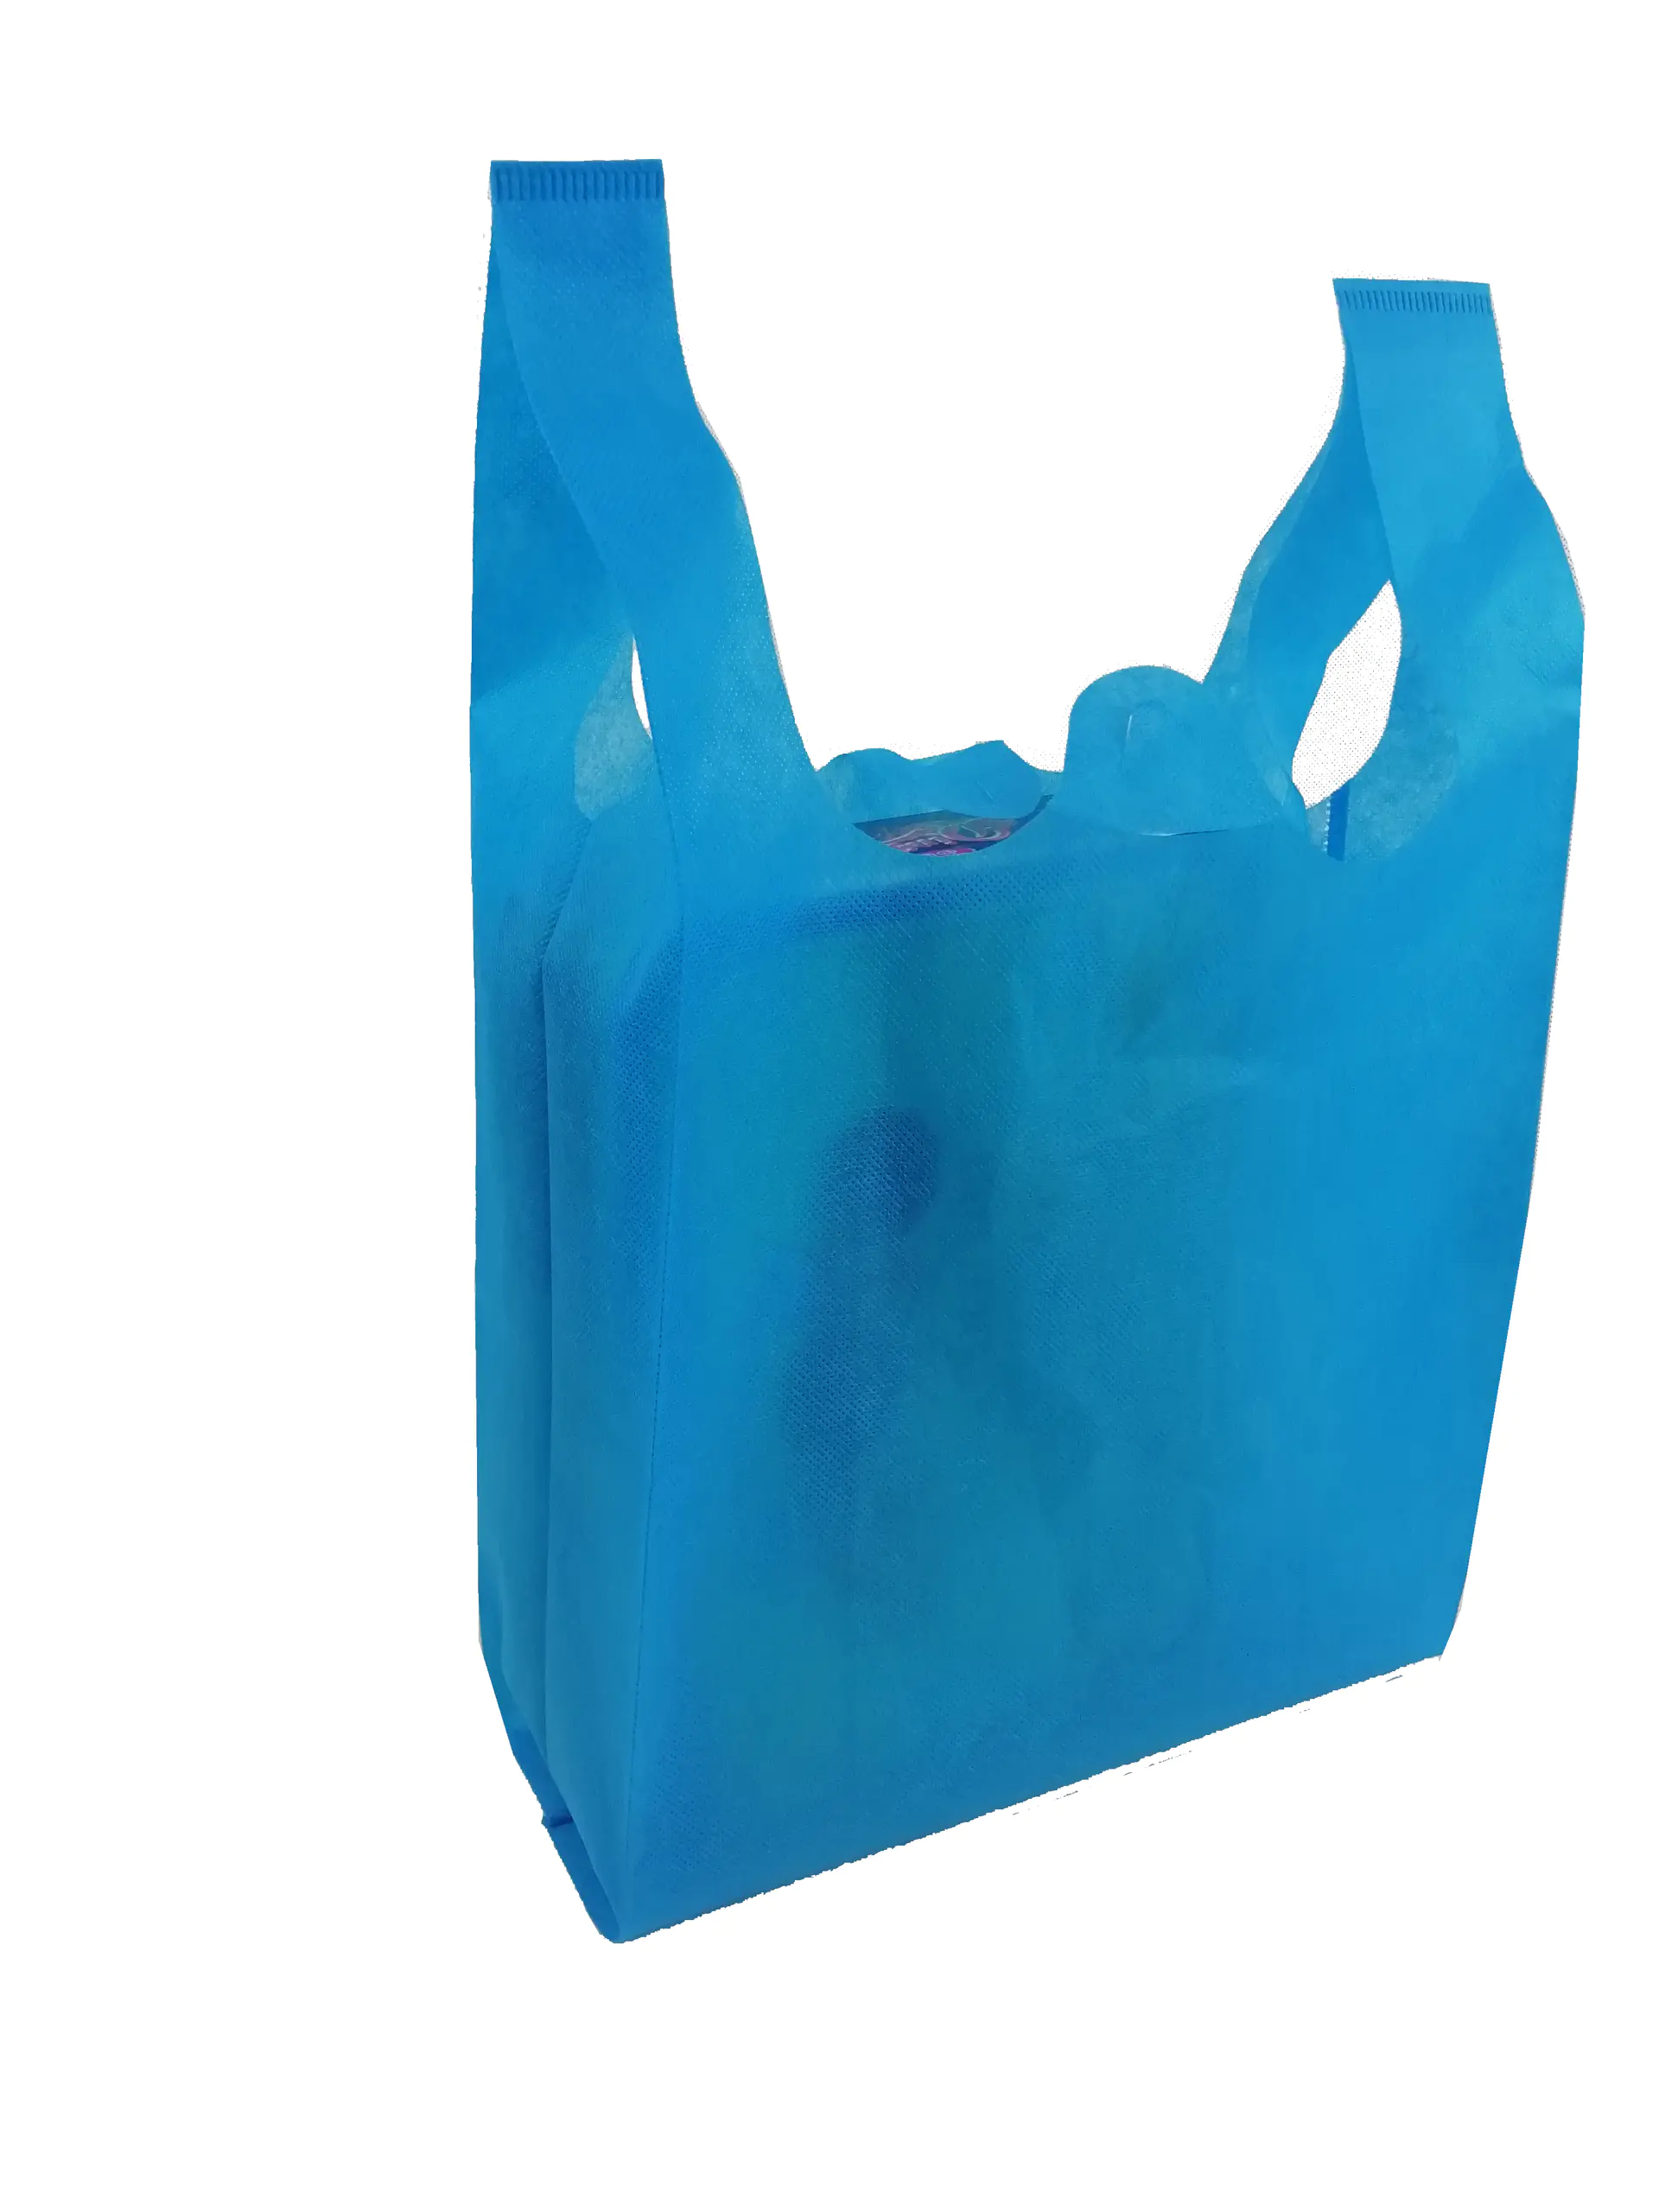 Chinese factory Eco-friendly Popular Shopping Bag Nonwoven Fabric Reusable Non woven Bag